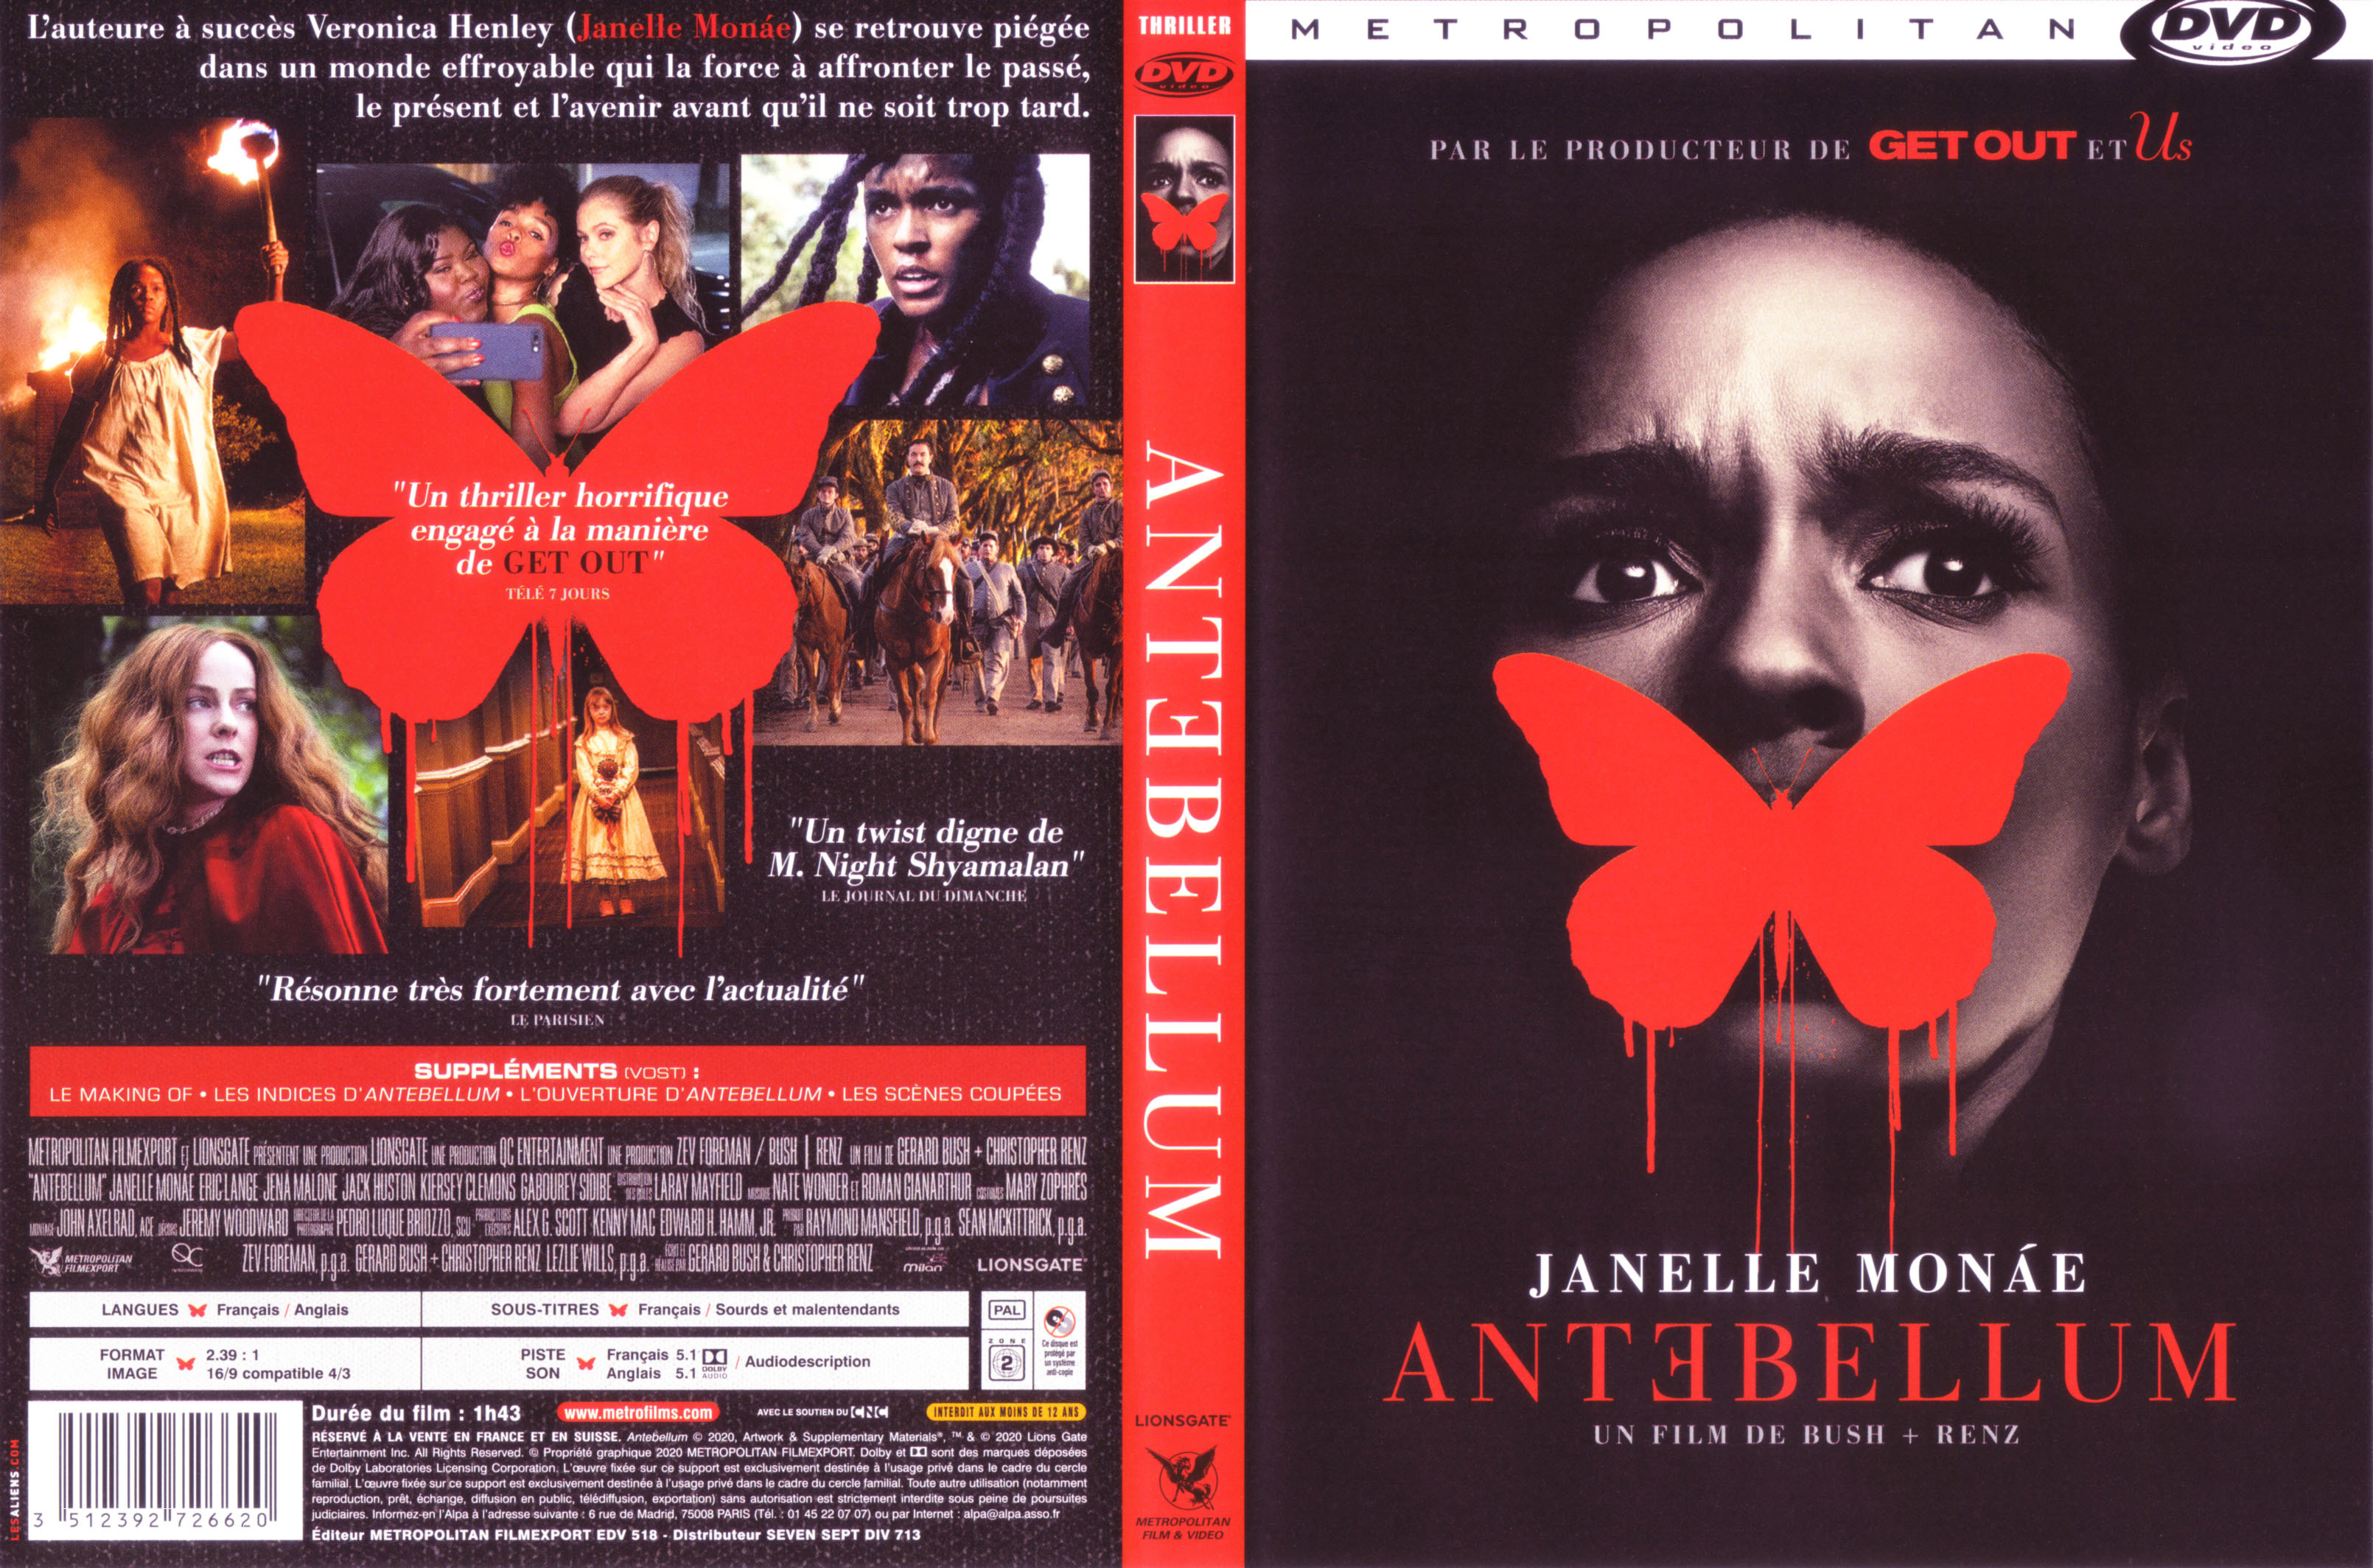 Jaquette DVD Antebellum